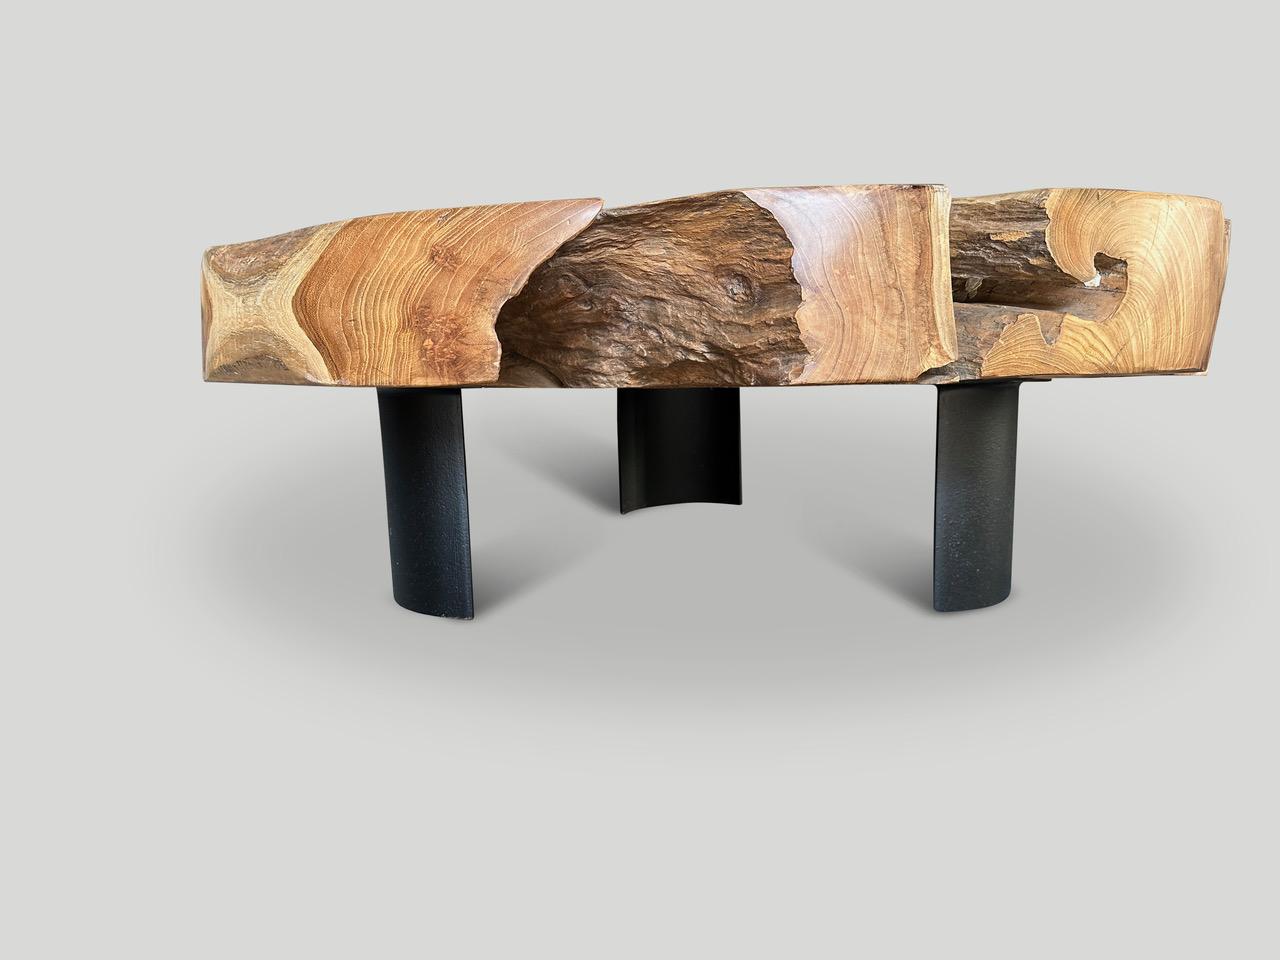 Table basse en teck recyclé. Sculpté à la main dans cette belle forme utilisable tout en respectant le bois organique naturel. Cet impressionnant plateau de cinq pouces d'épaisseur flotte sur trois pieds minimalistes en acier. Nous avons poli le